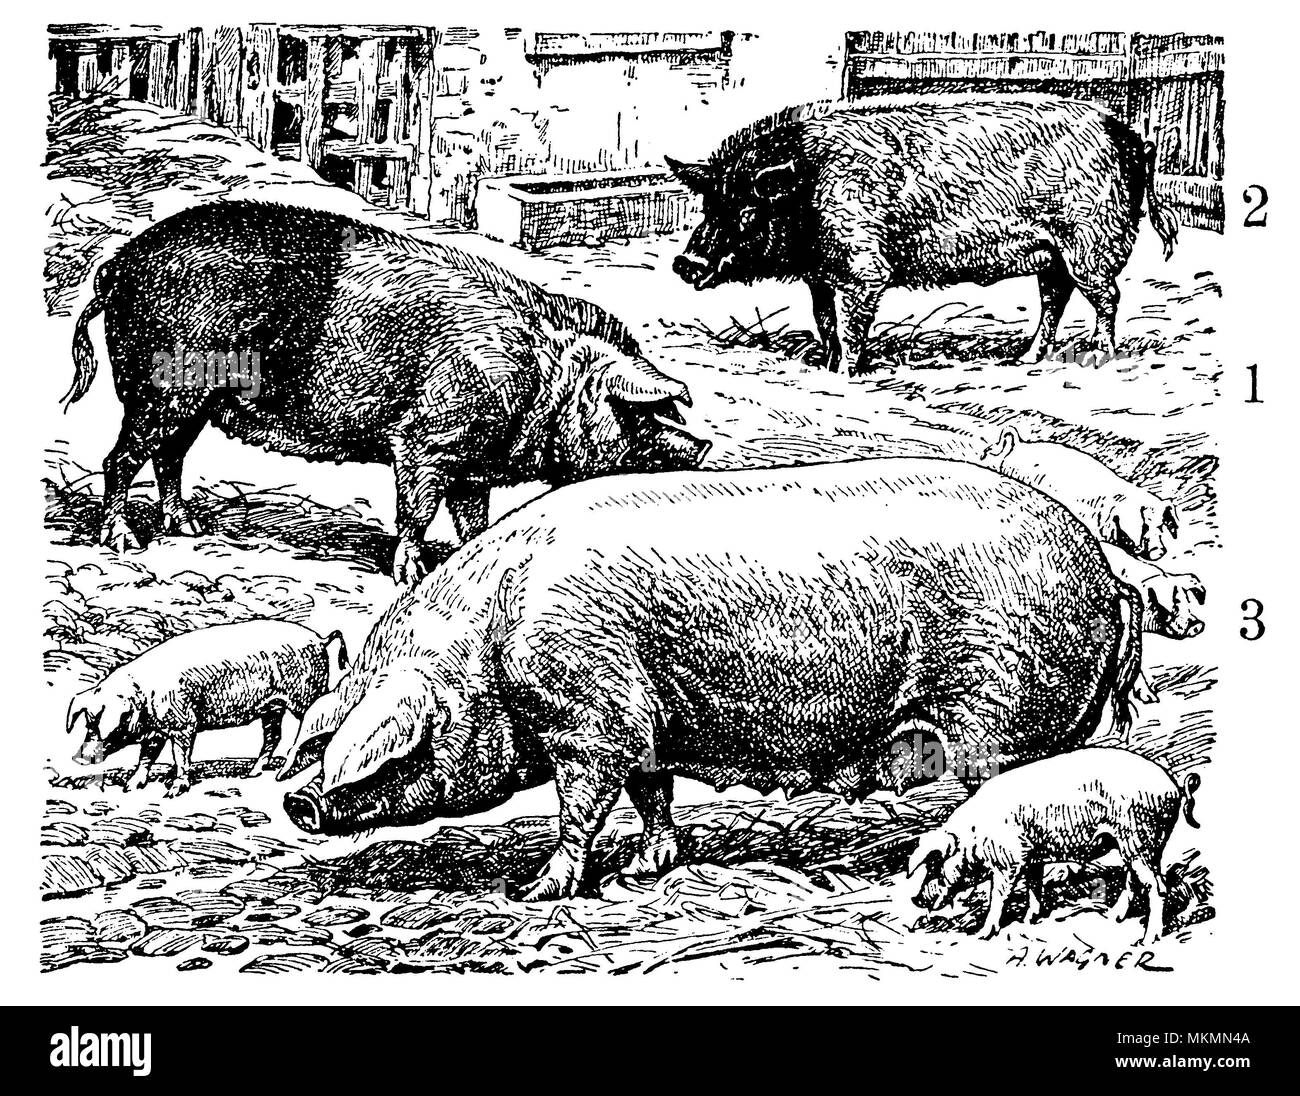 Domestic pig: pig breeds. 1 Bavarian Landschwein, 2 Hannoversches Landschwein, 3 German Veredeltes Landschwein, A[dolf] Wagner Stock Photo